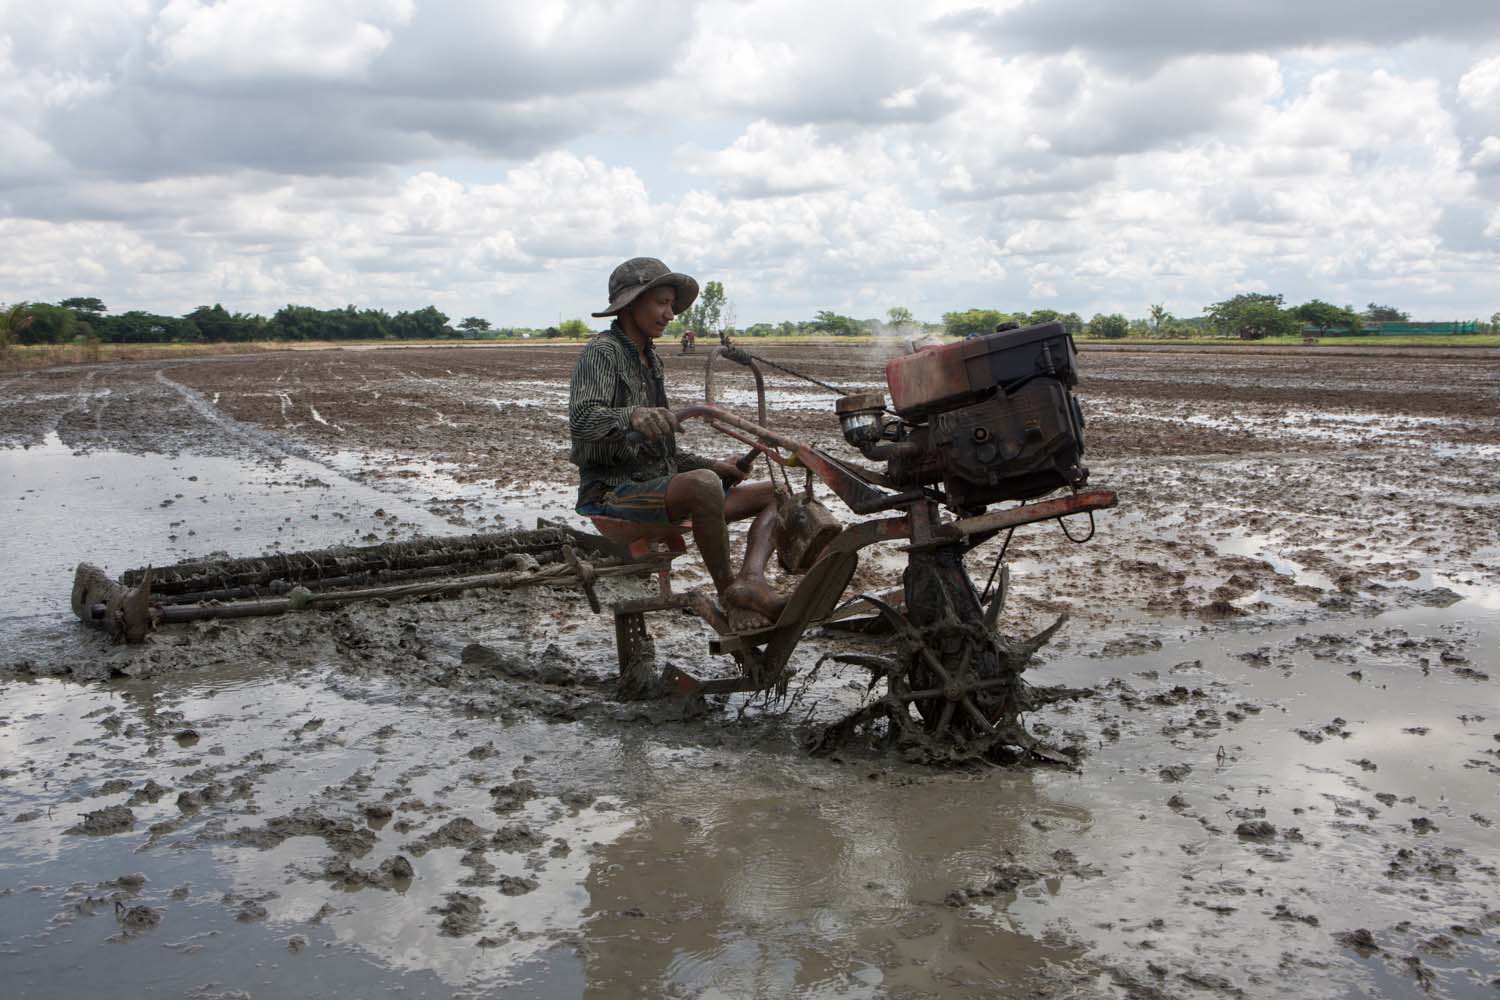 A farmer ploughs a paddy field in Yangon's Twante Township on May 29. (Thuya Zaw | Frontier)